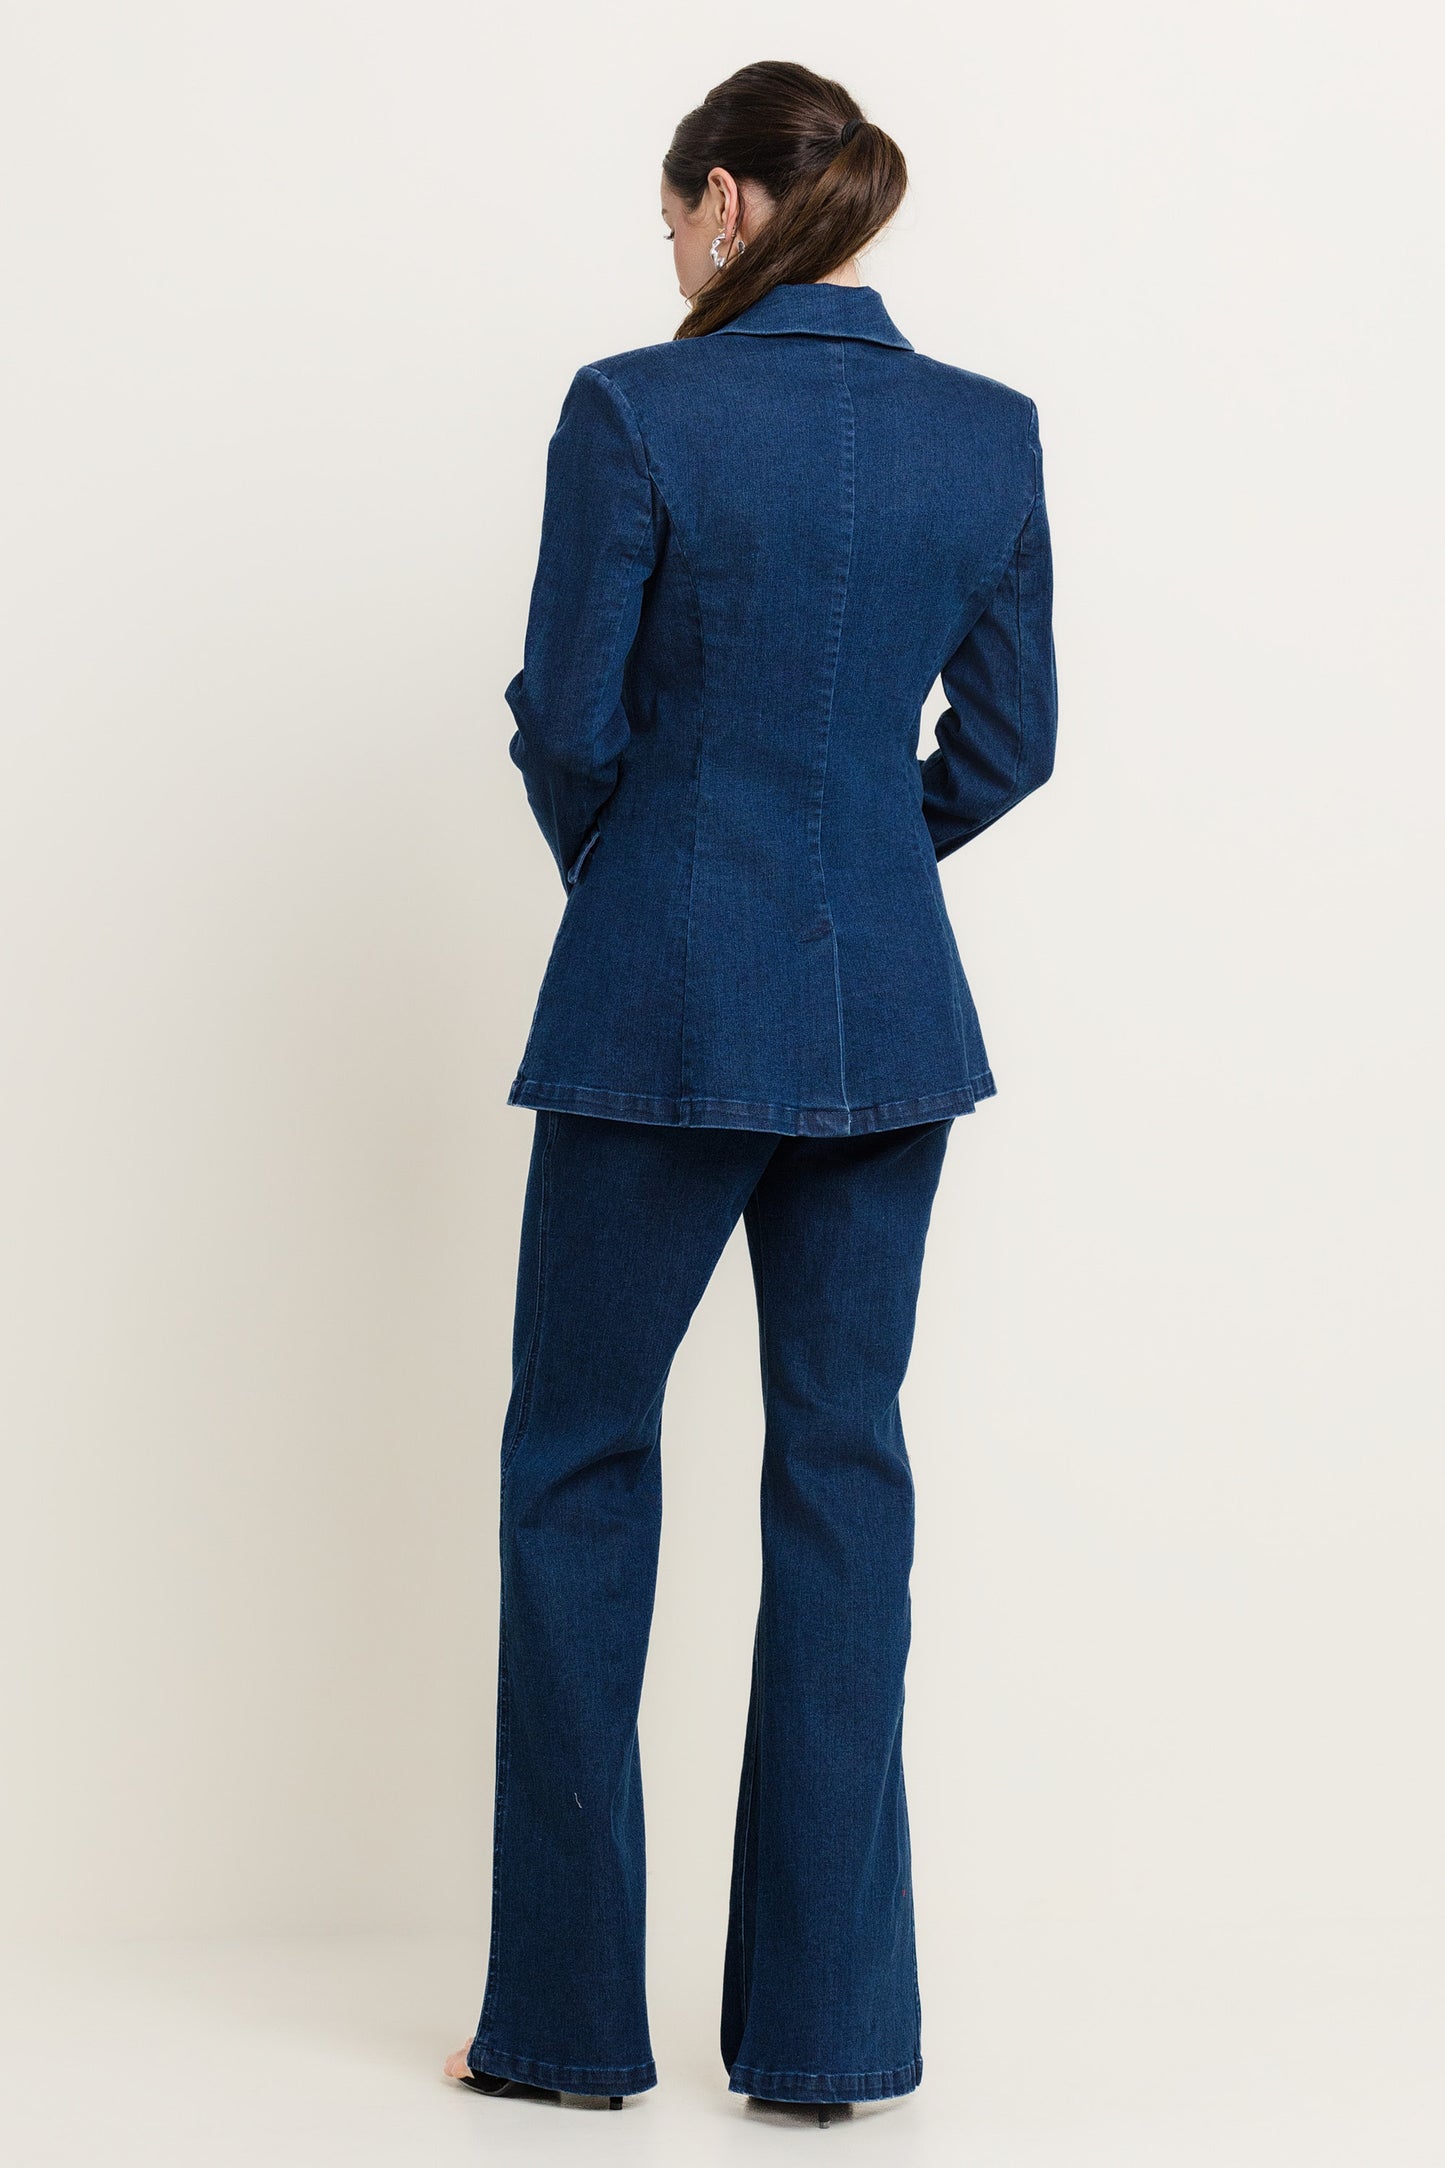 2pc set- denim suit blazer & trousers